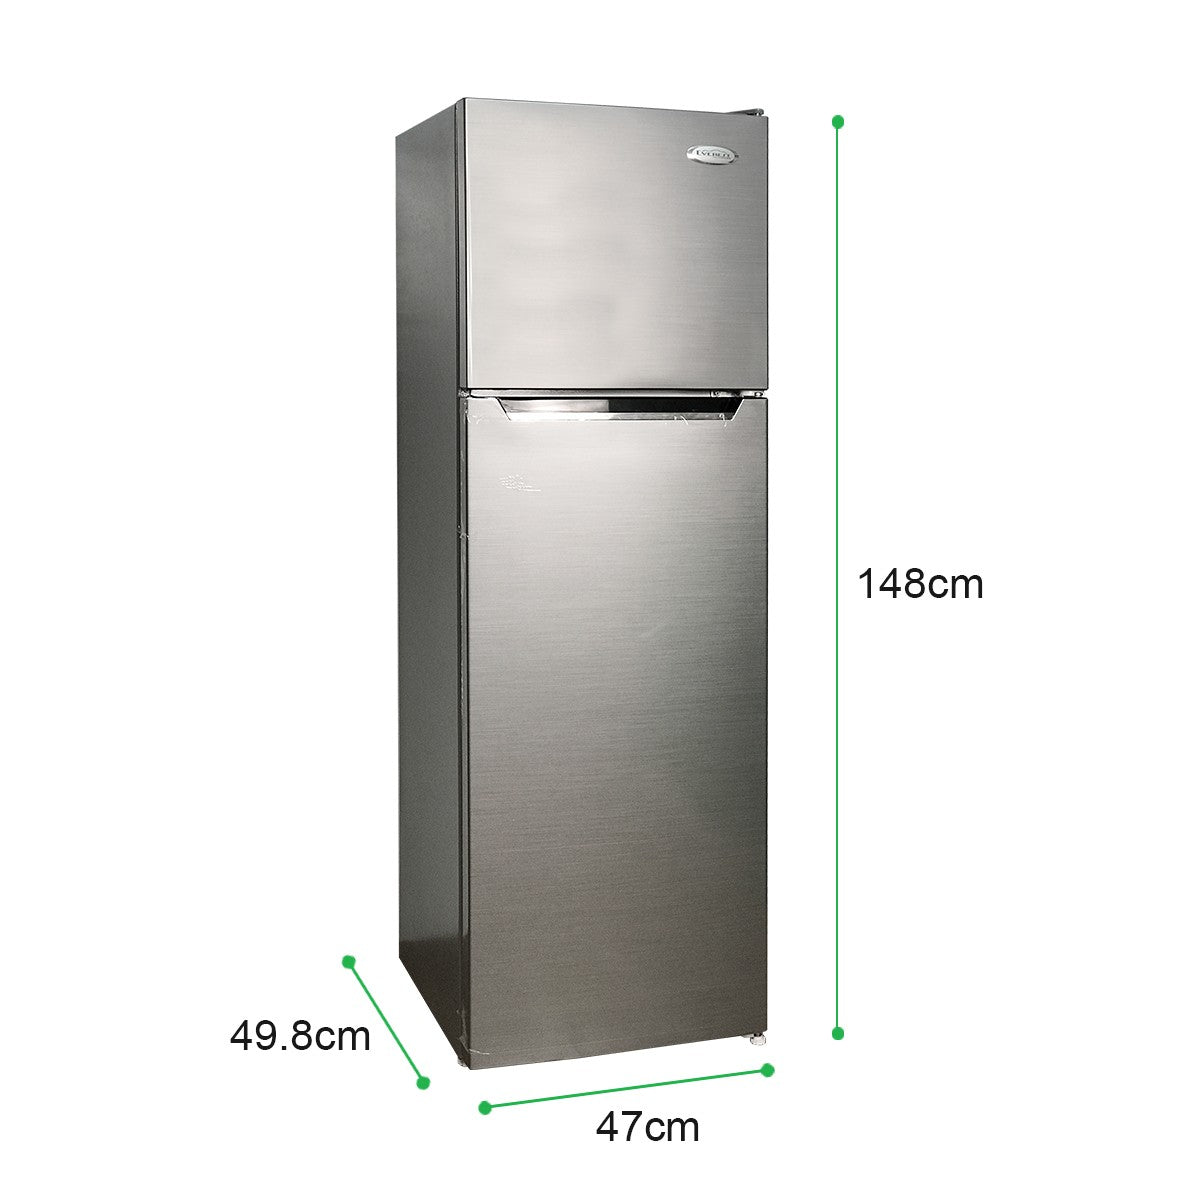 6.1 cu. ft. Two Door Refrigerator